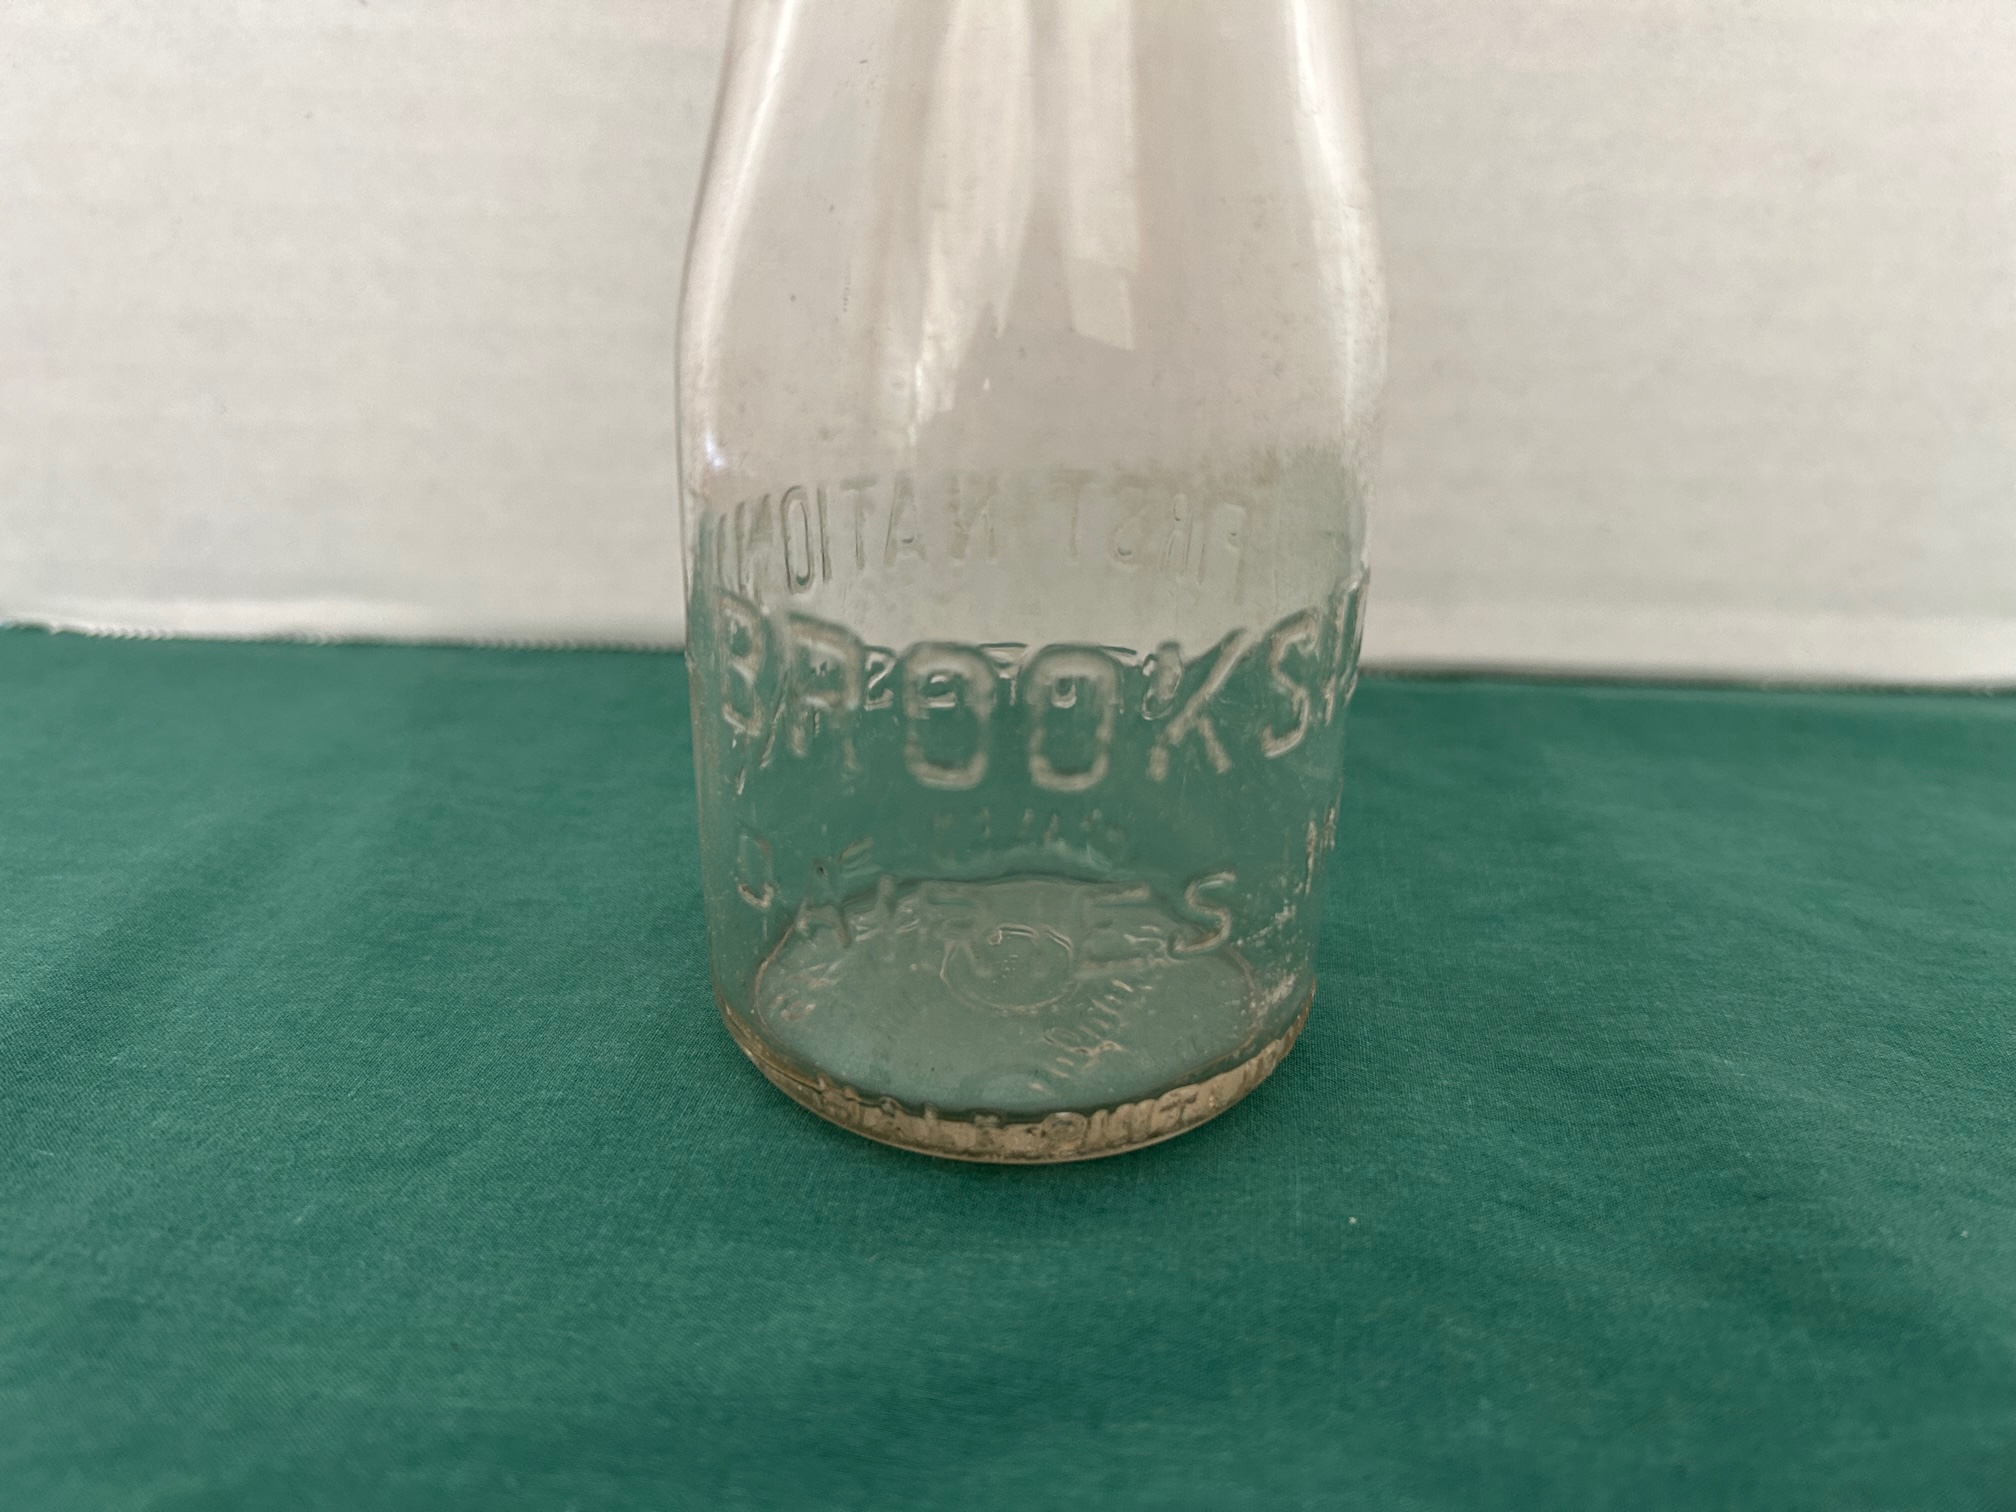 First Glass Milk Bottles